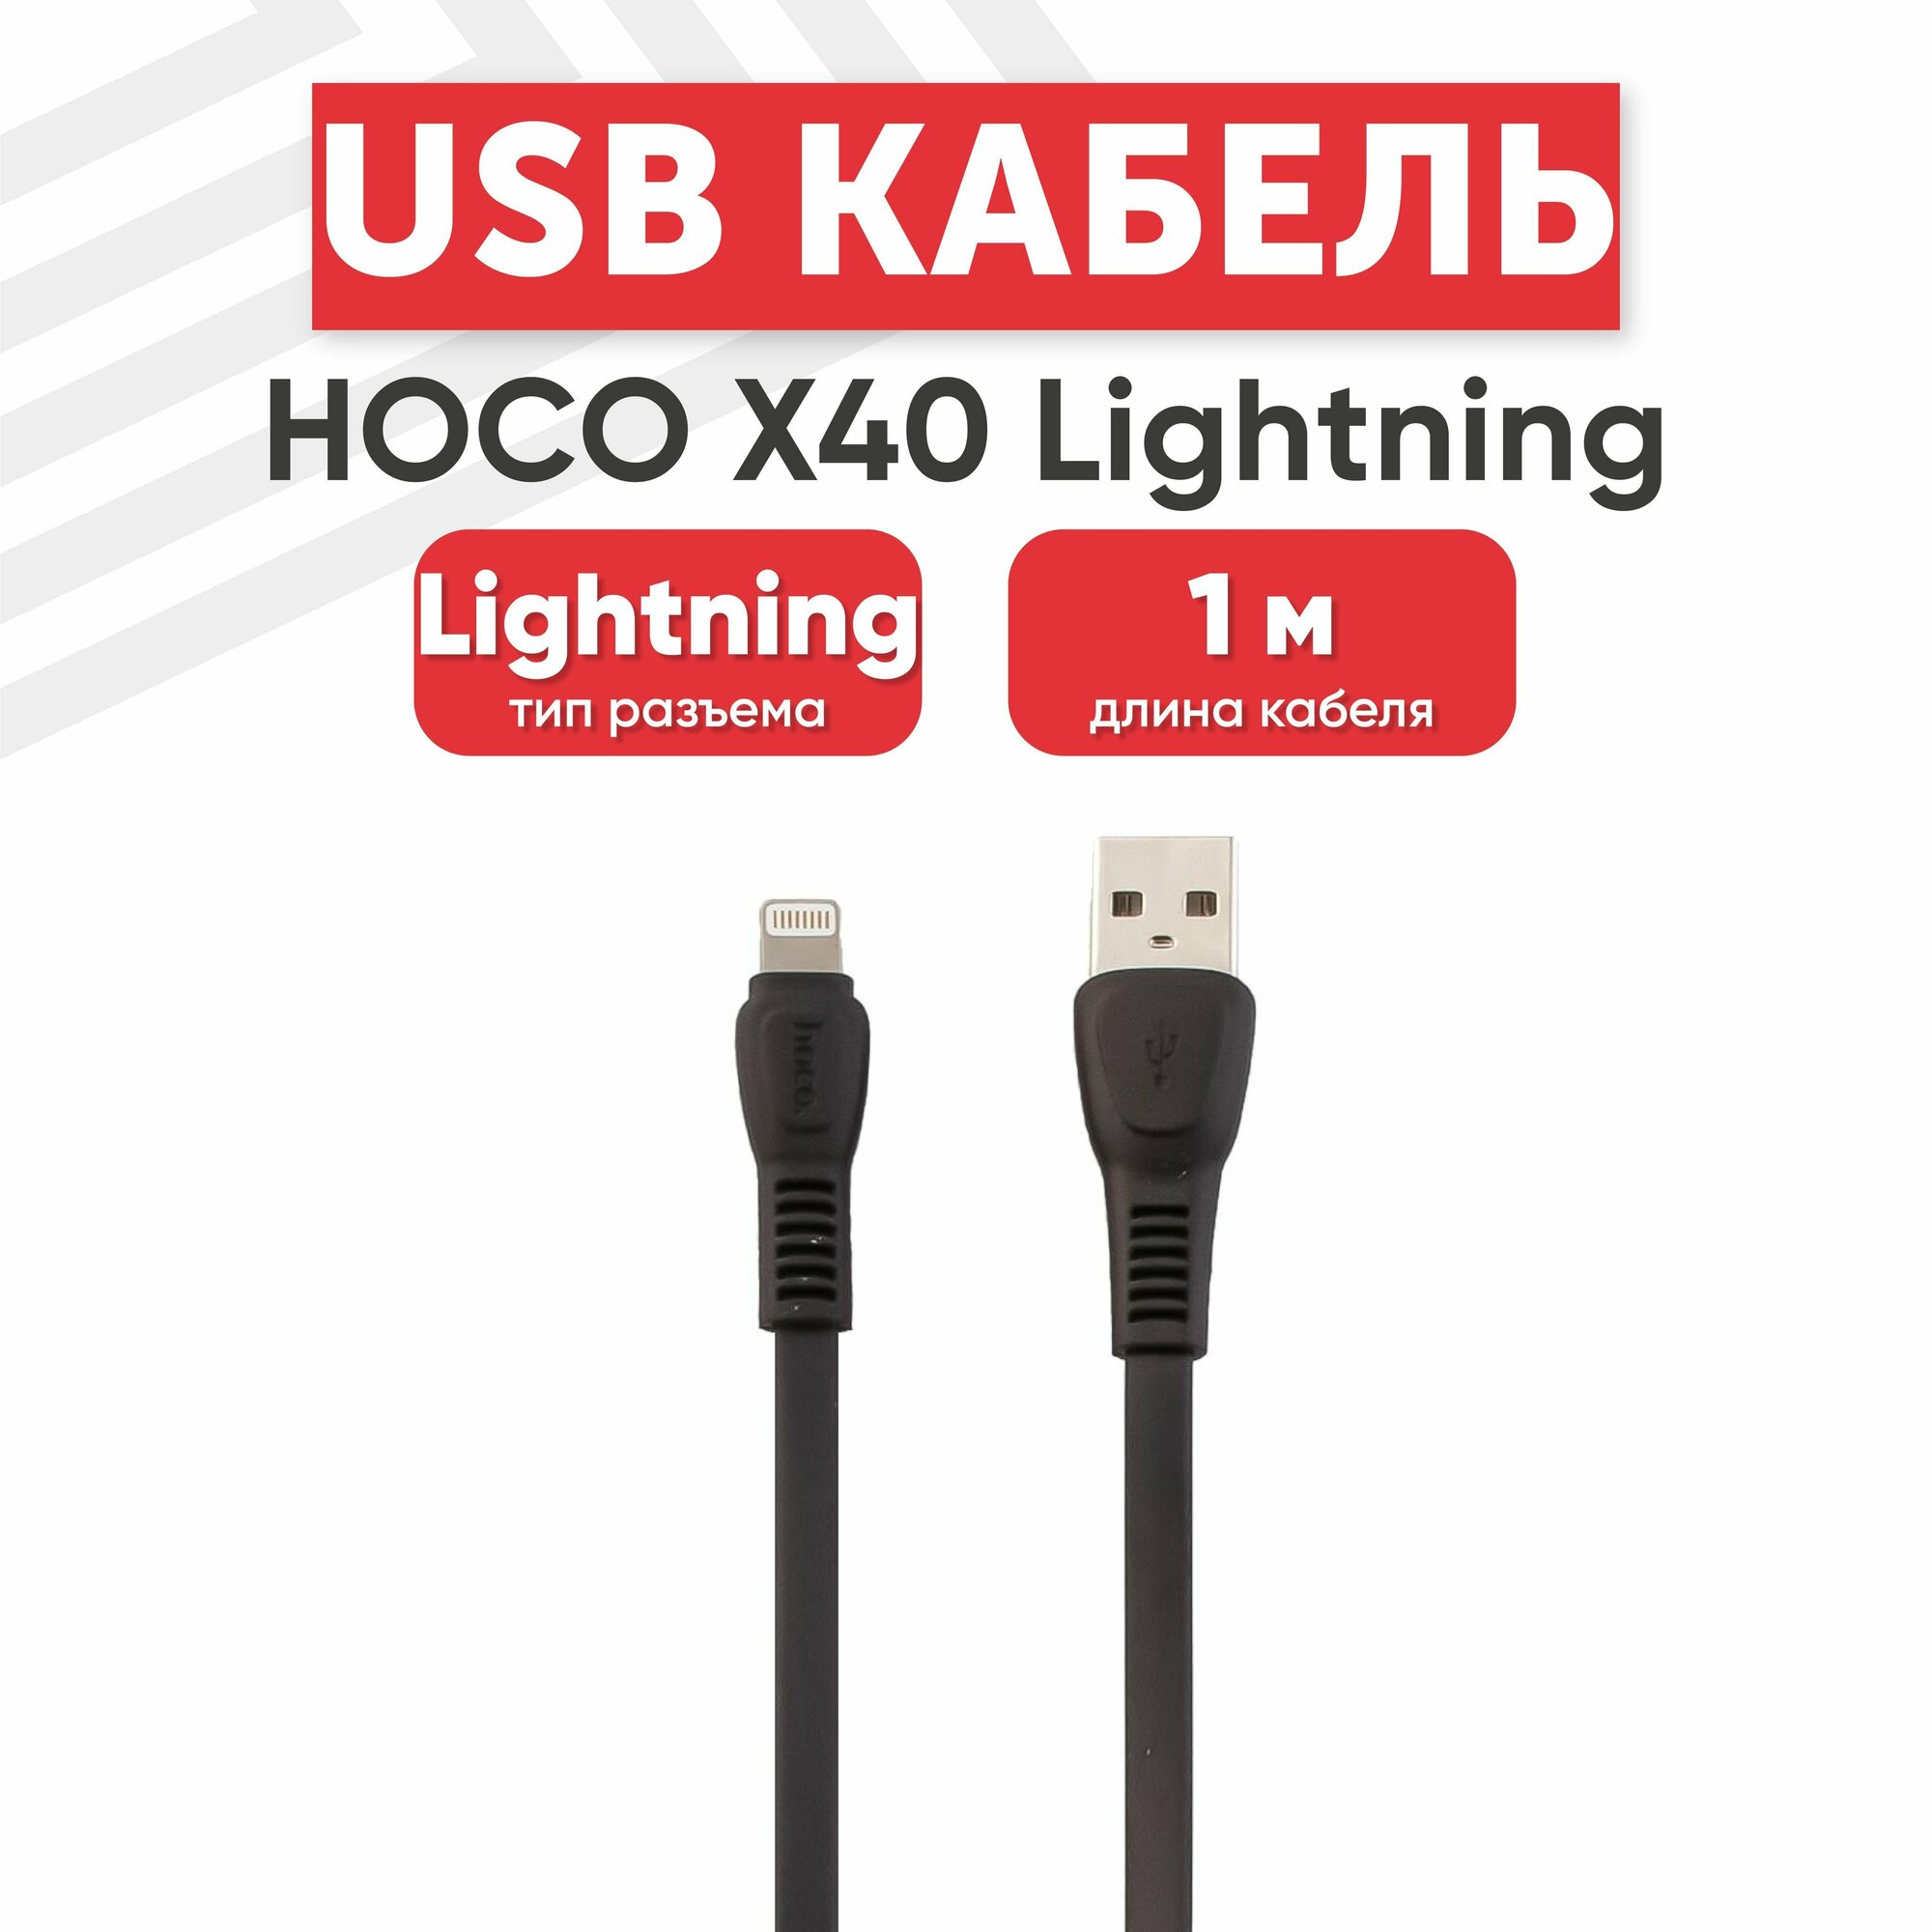 USB кабель Hoco X40 для зарядки, передачи данных, Lightning 8-pin, 2.4А, 1 метр, TPE, черный